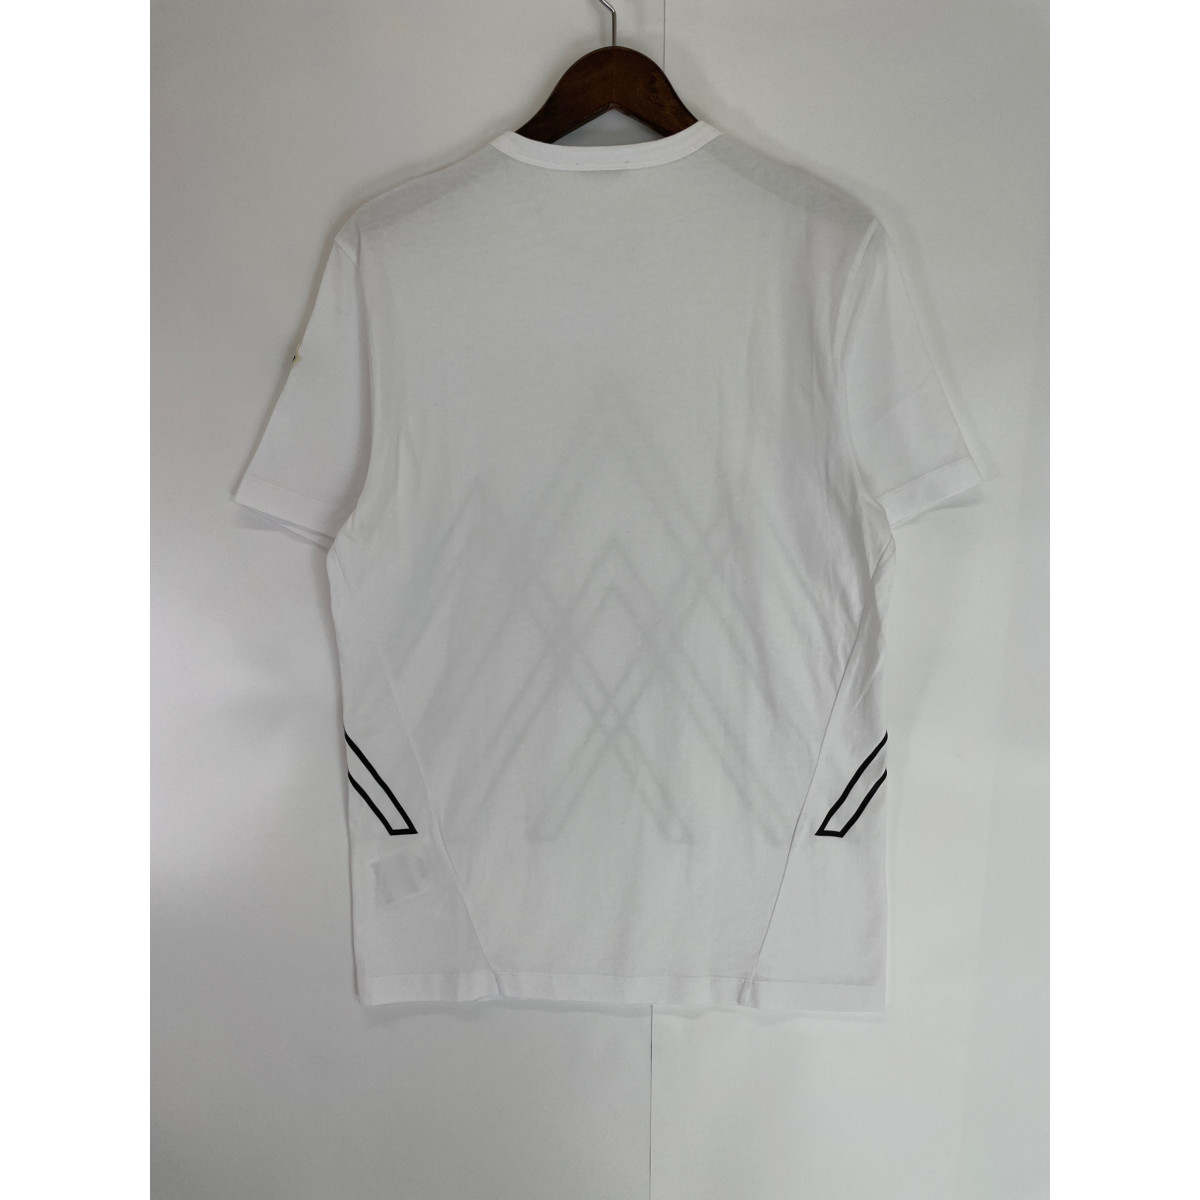 MONCLER モンクレール 21年製 白 ロゴプリント Tシャツ ホワイト S トップス コットン メンズ 中古_画像3